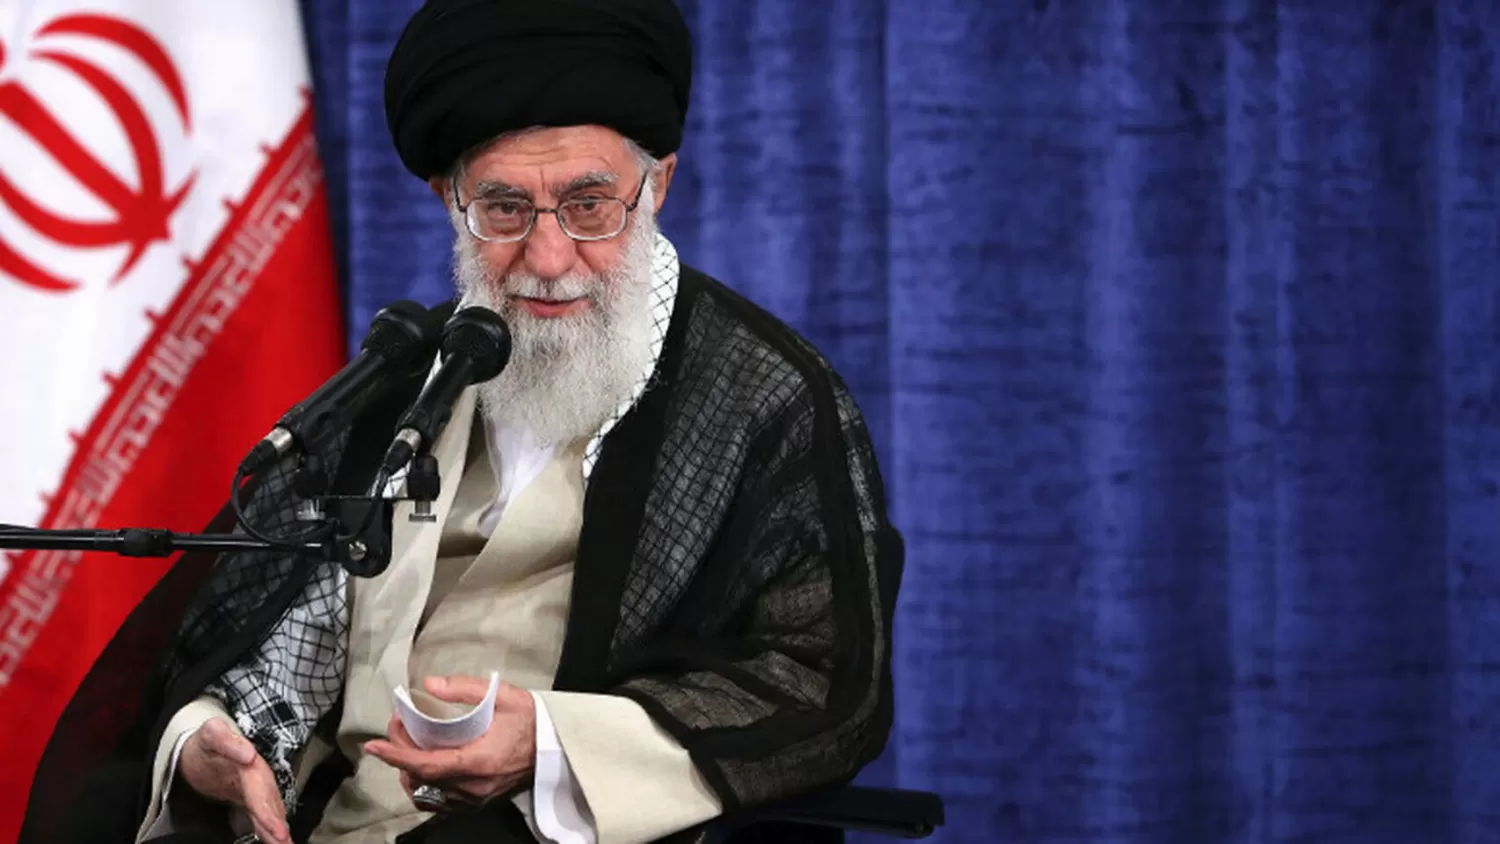 El líder de la Revolución Islámica de Irán, el ayatola Ali Jamenei.